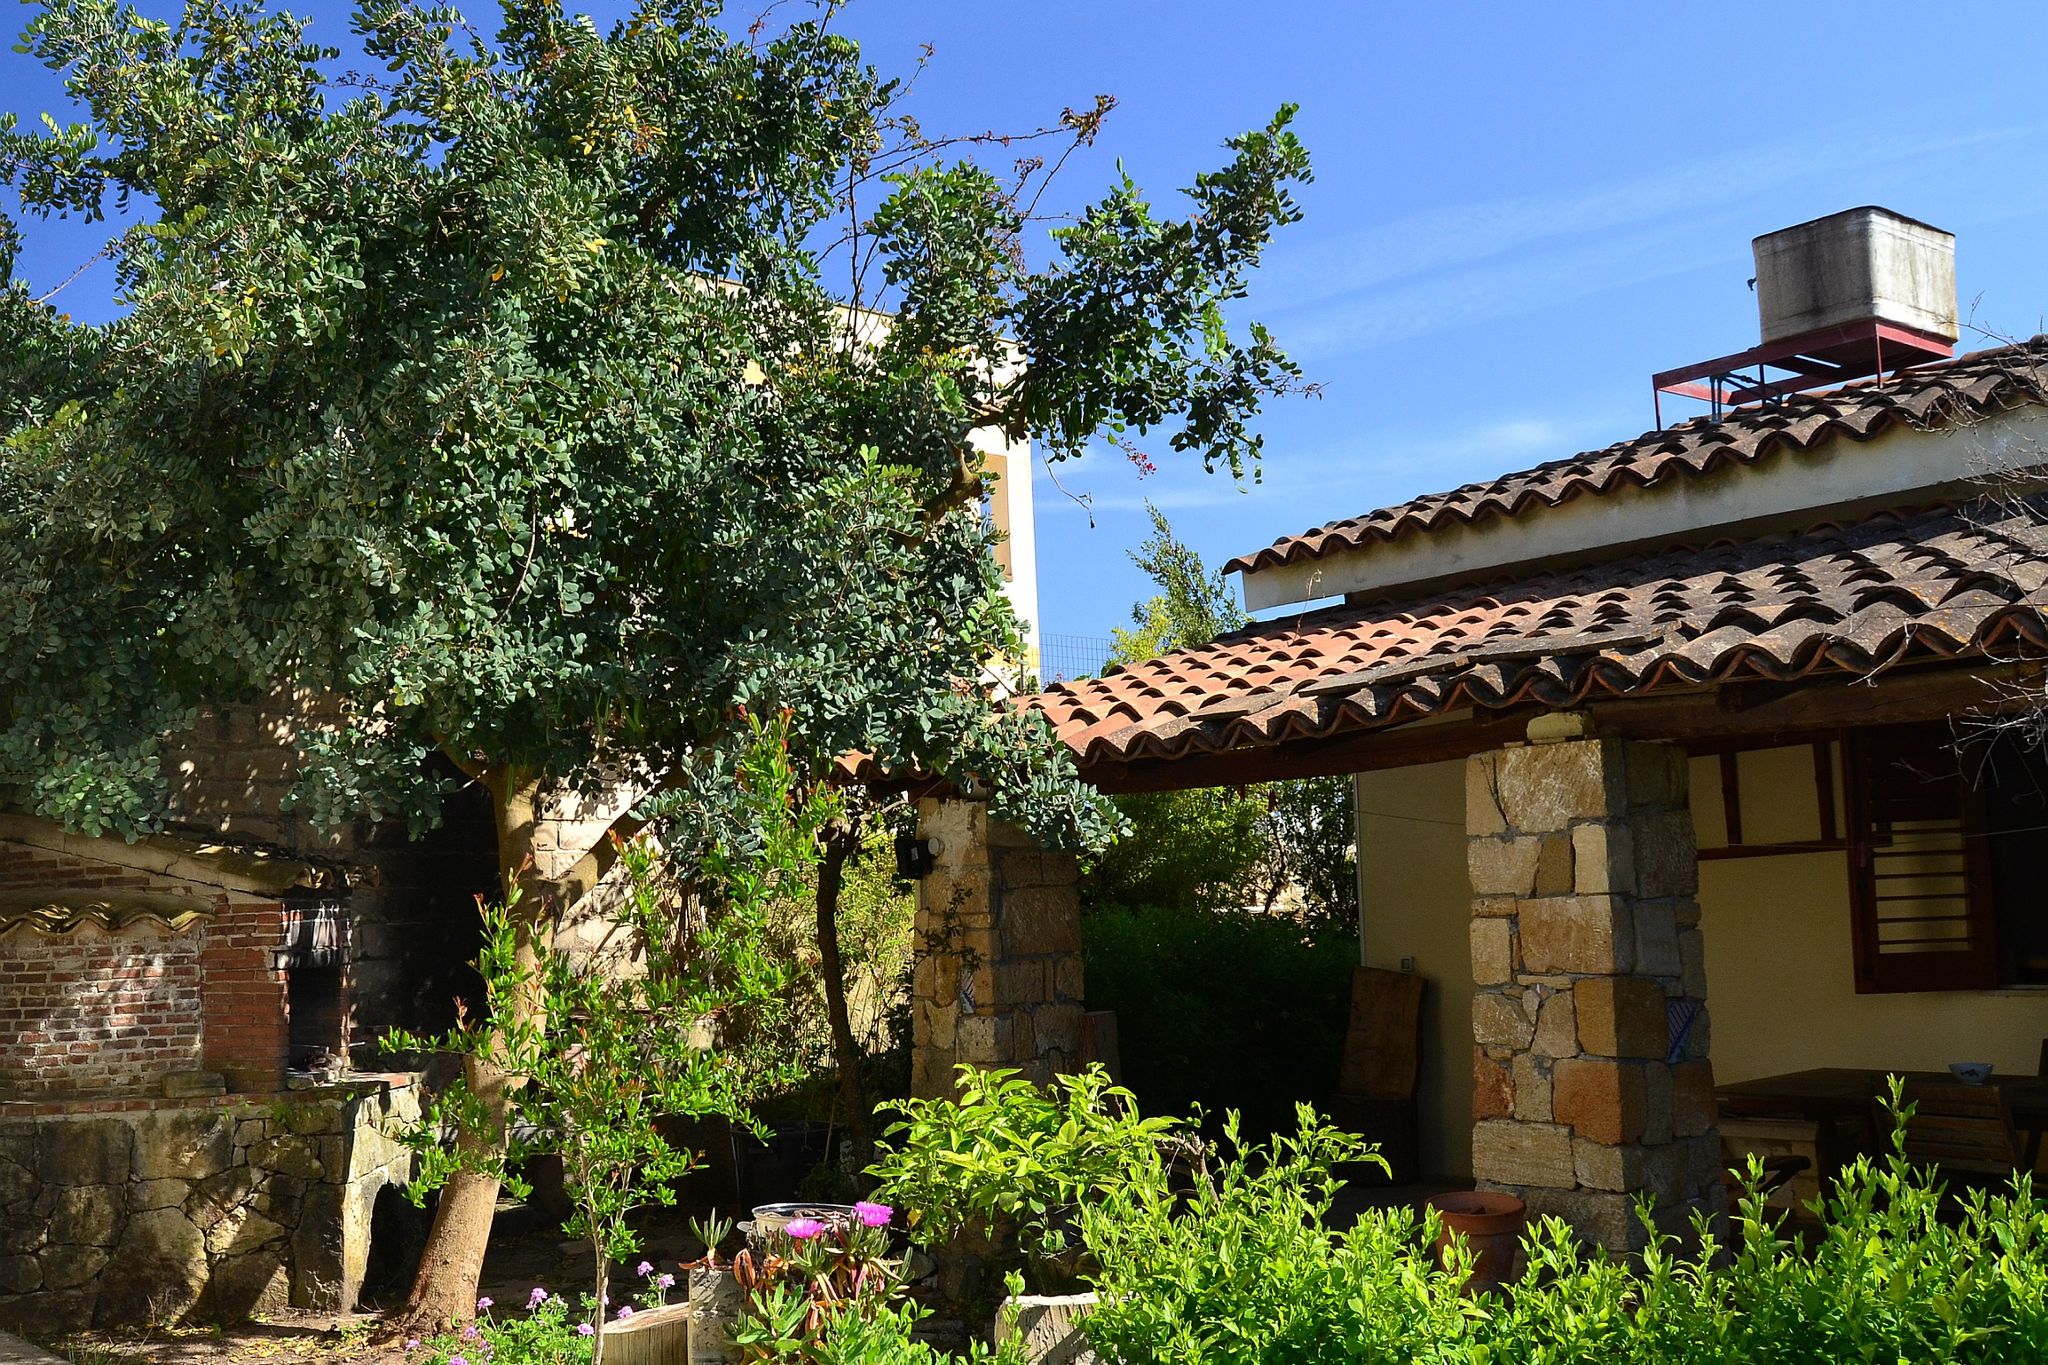 Ferienhaus in Sizilien mit eigener Terrasse